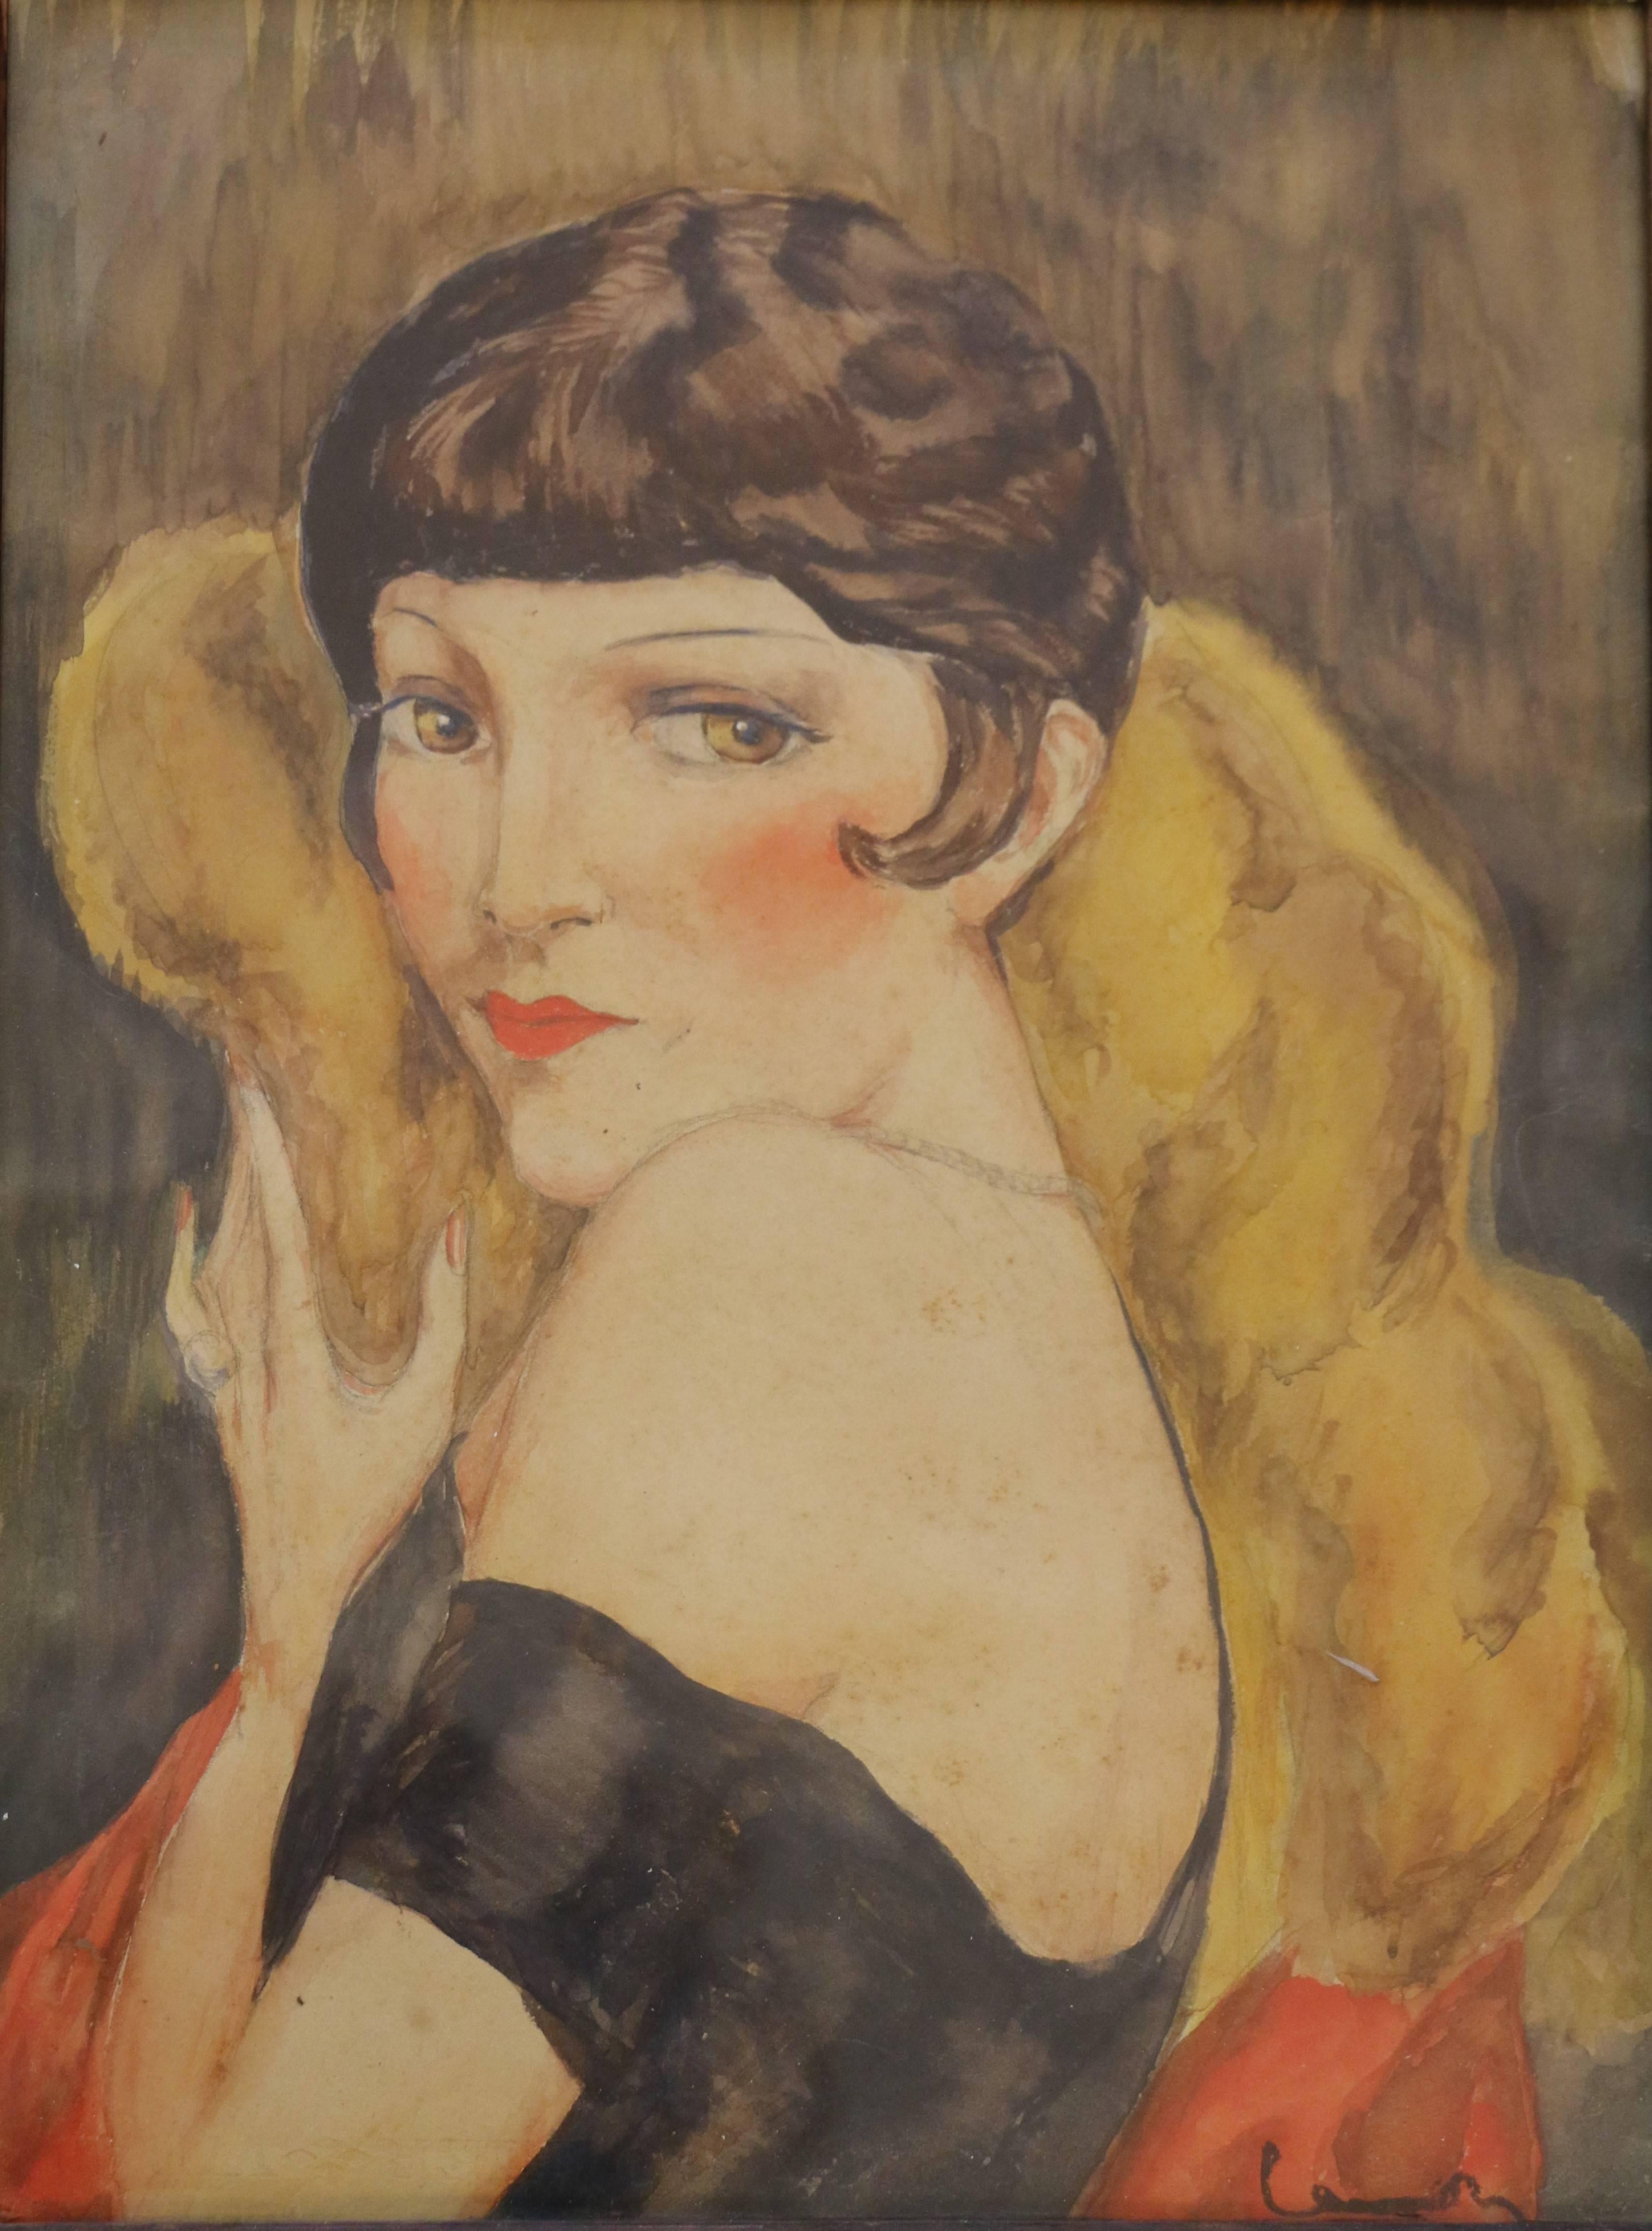 Portrait de Kiki de Montparnasse attribué à Charles Camoin (1879-1965). Cette aquarelle sur papier porte la signature 